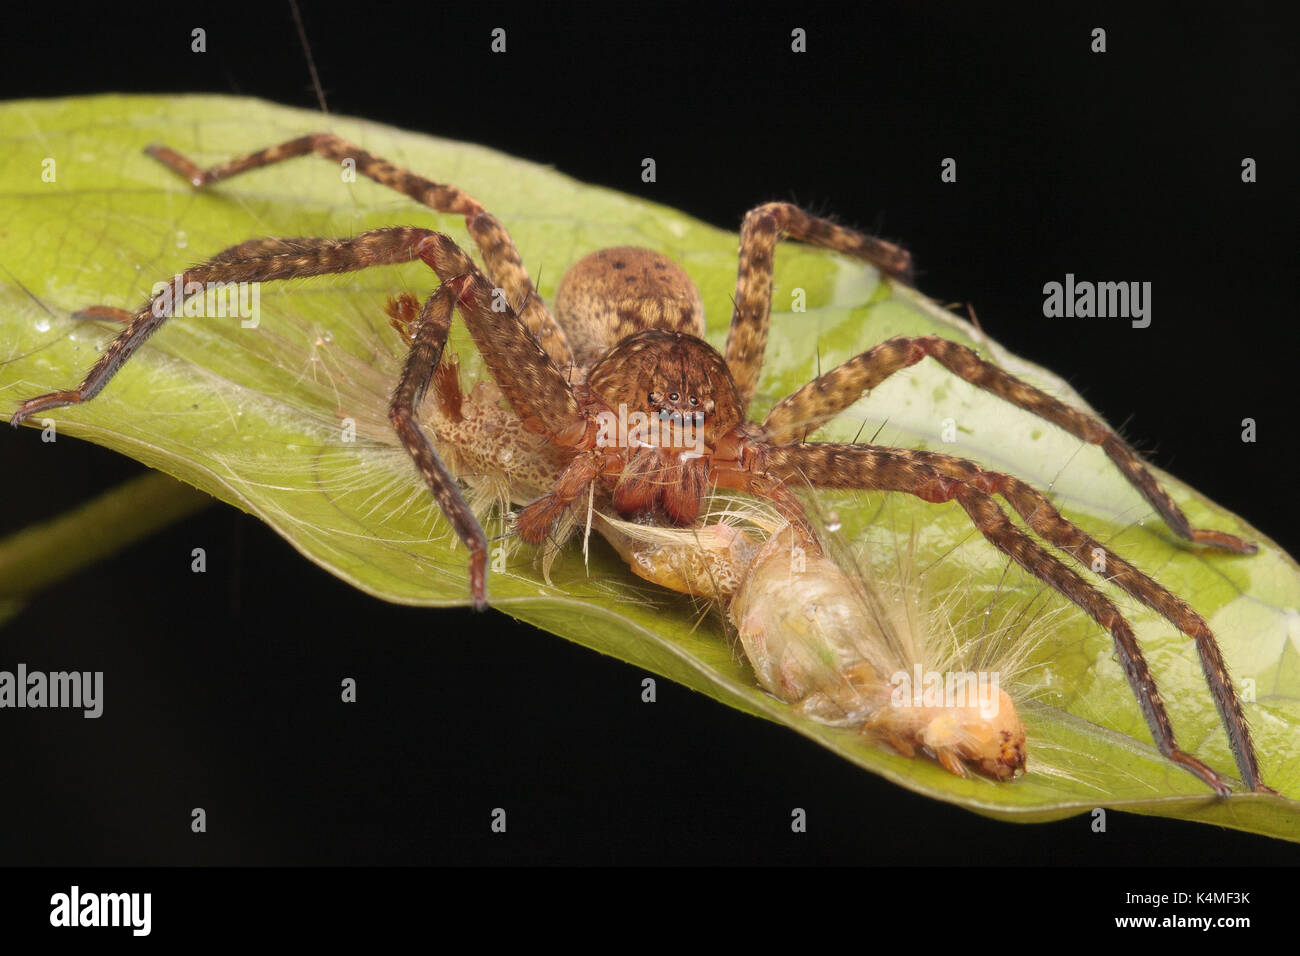 Huntsman spider (Heteropoda sp) Stock Photo